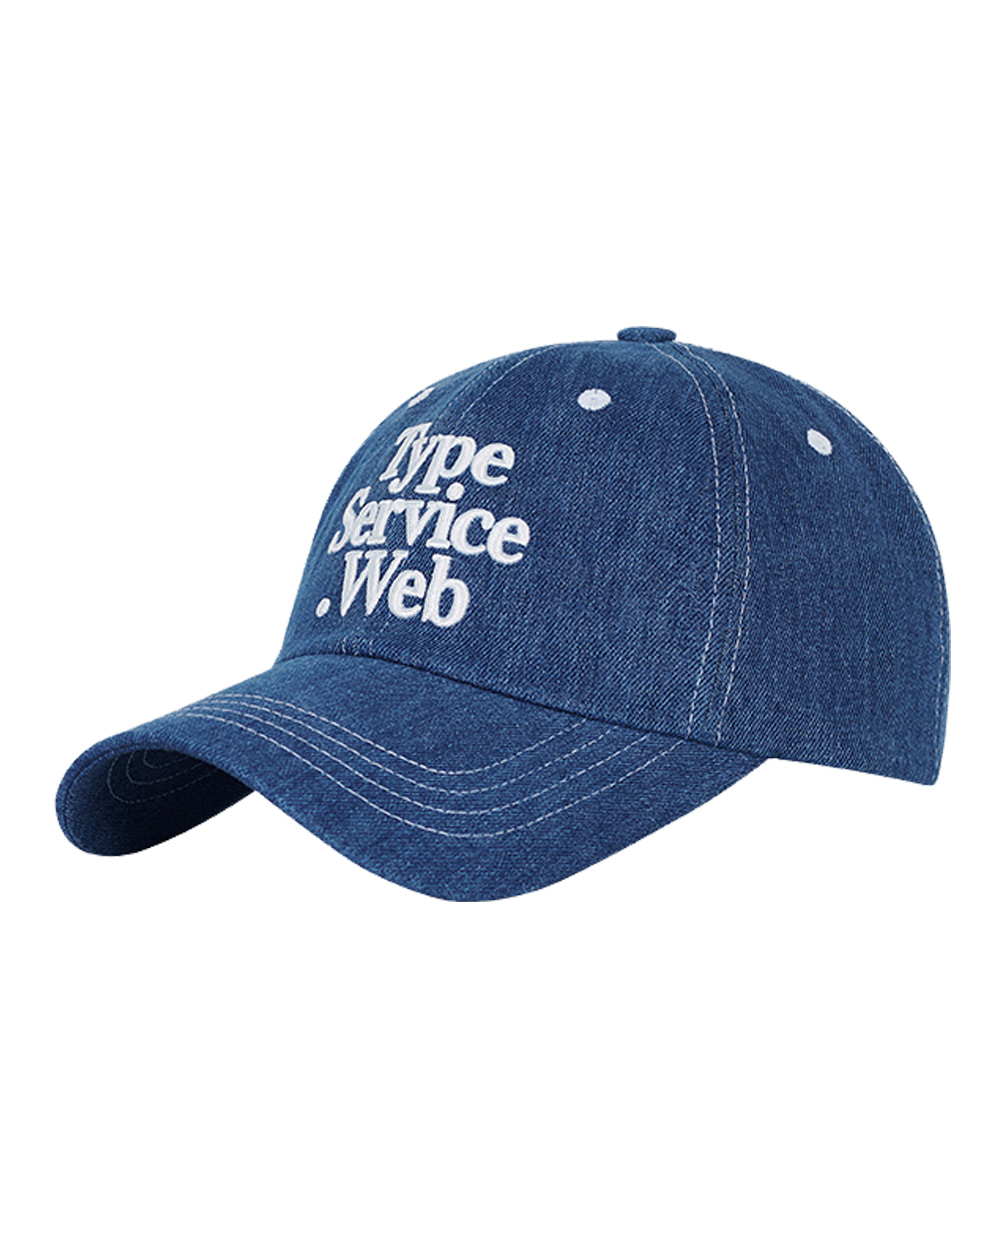 타입서비스 Typeservice Web Stitch Cap (Indigo Denim)